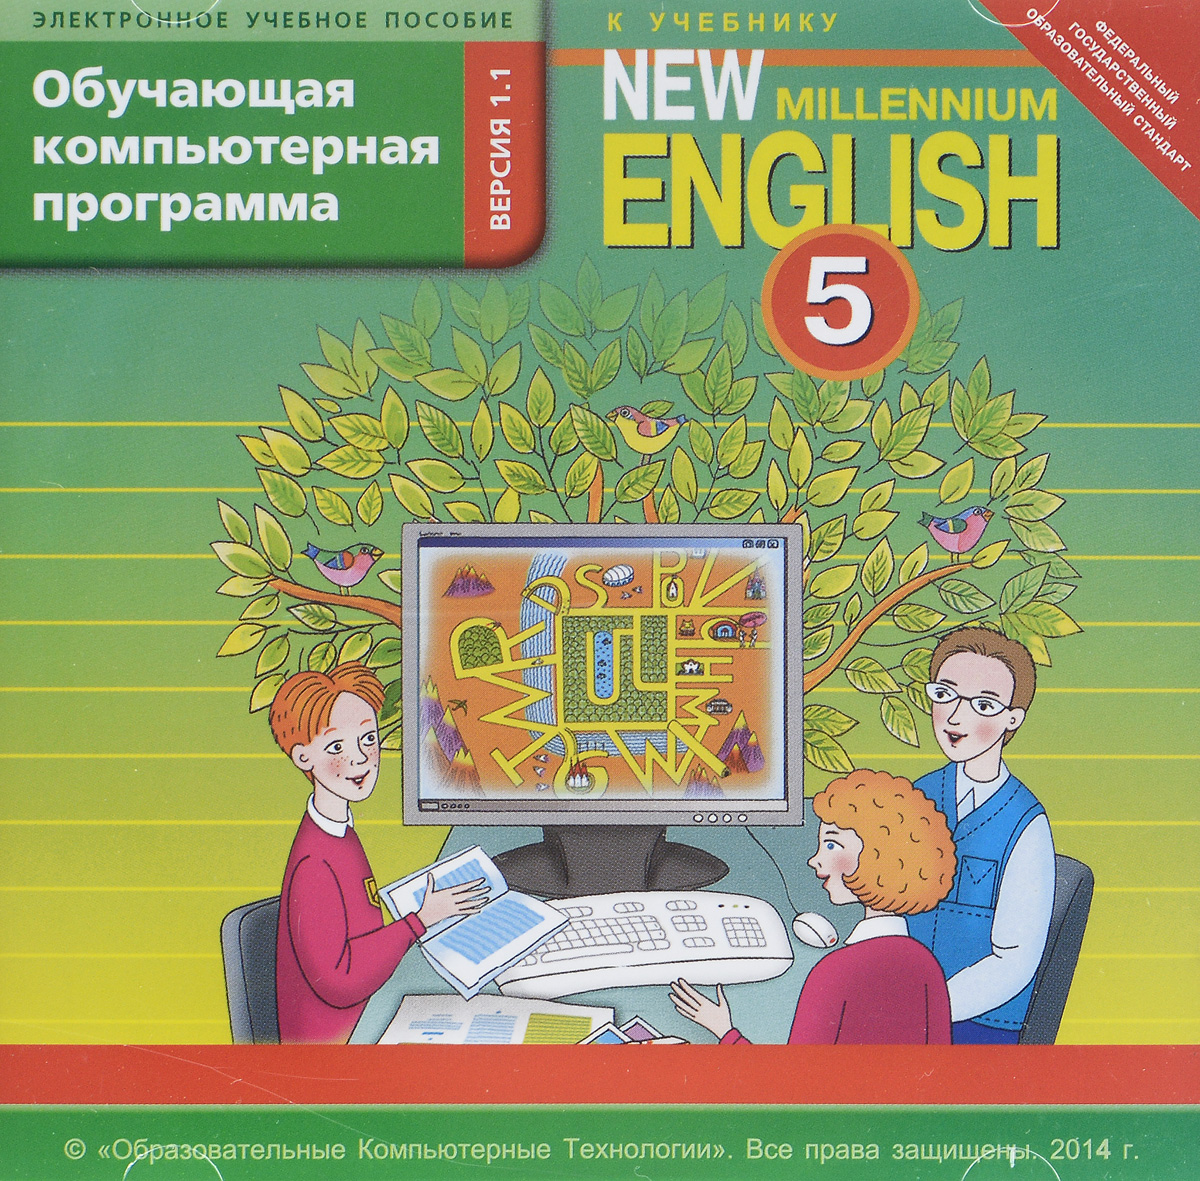 Enjoy english 5 класс обучающая компьютерная программа